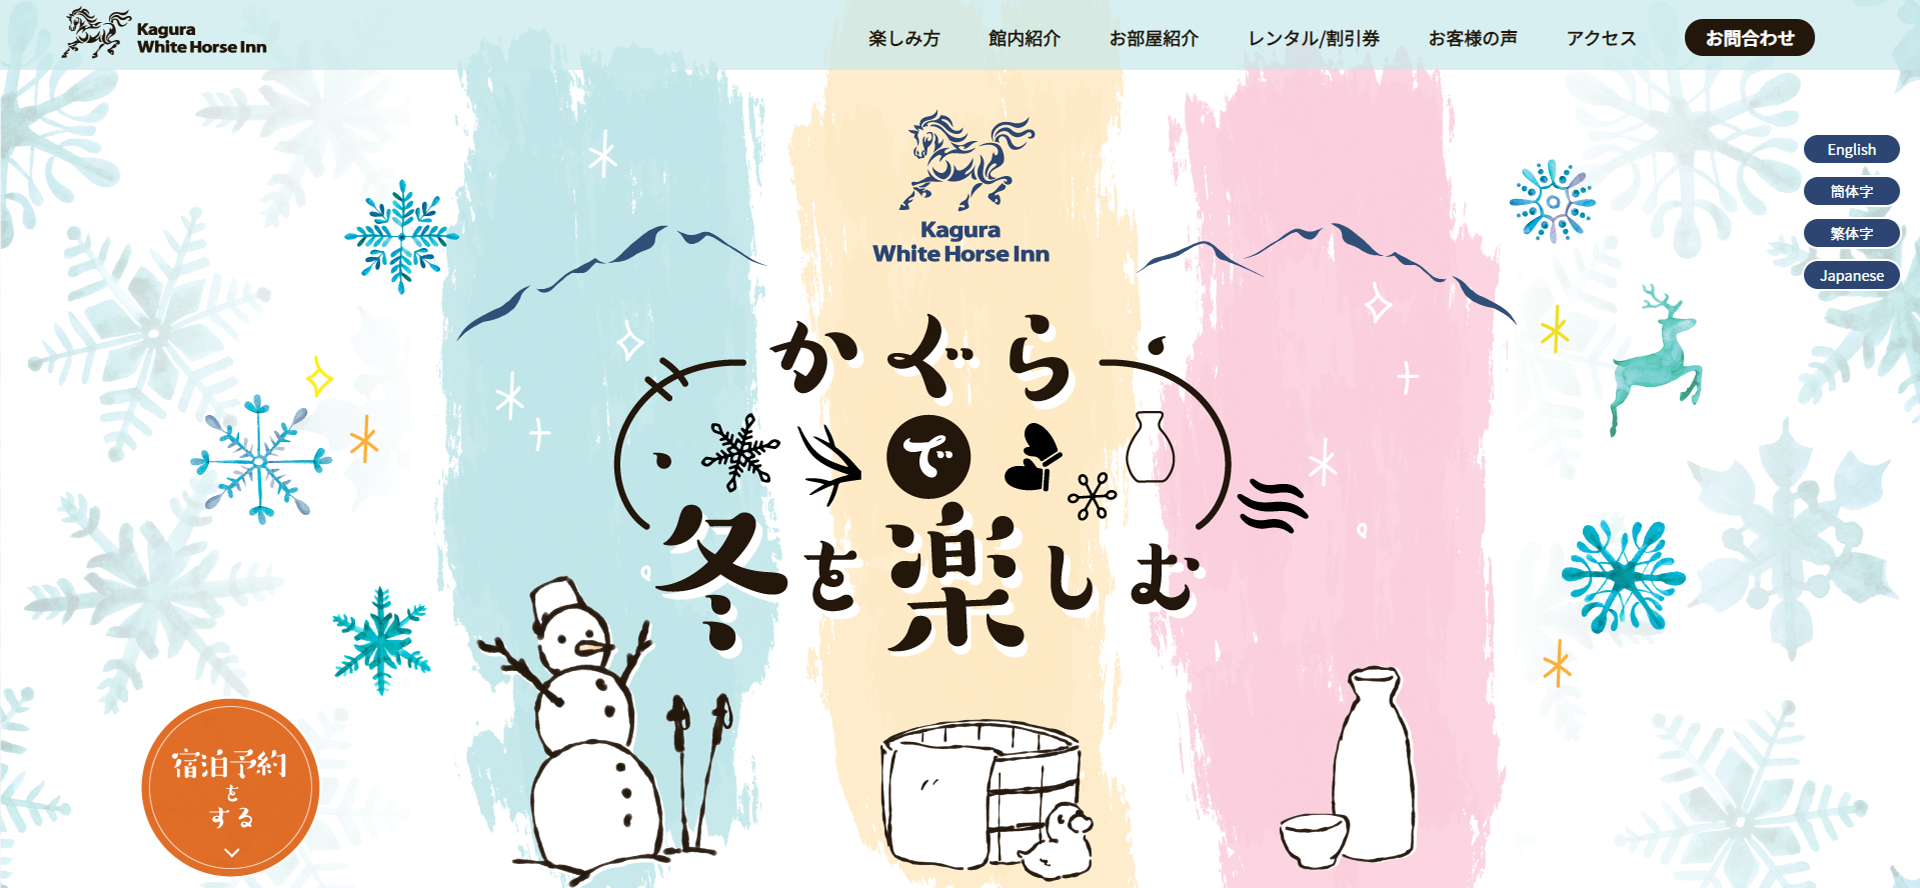 kagura White horse inn 多言語サイト